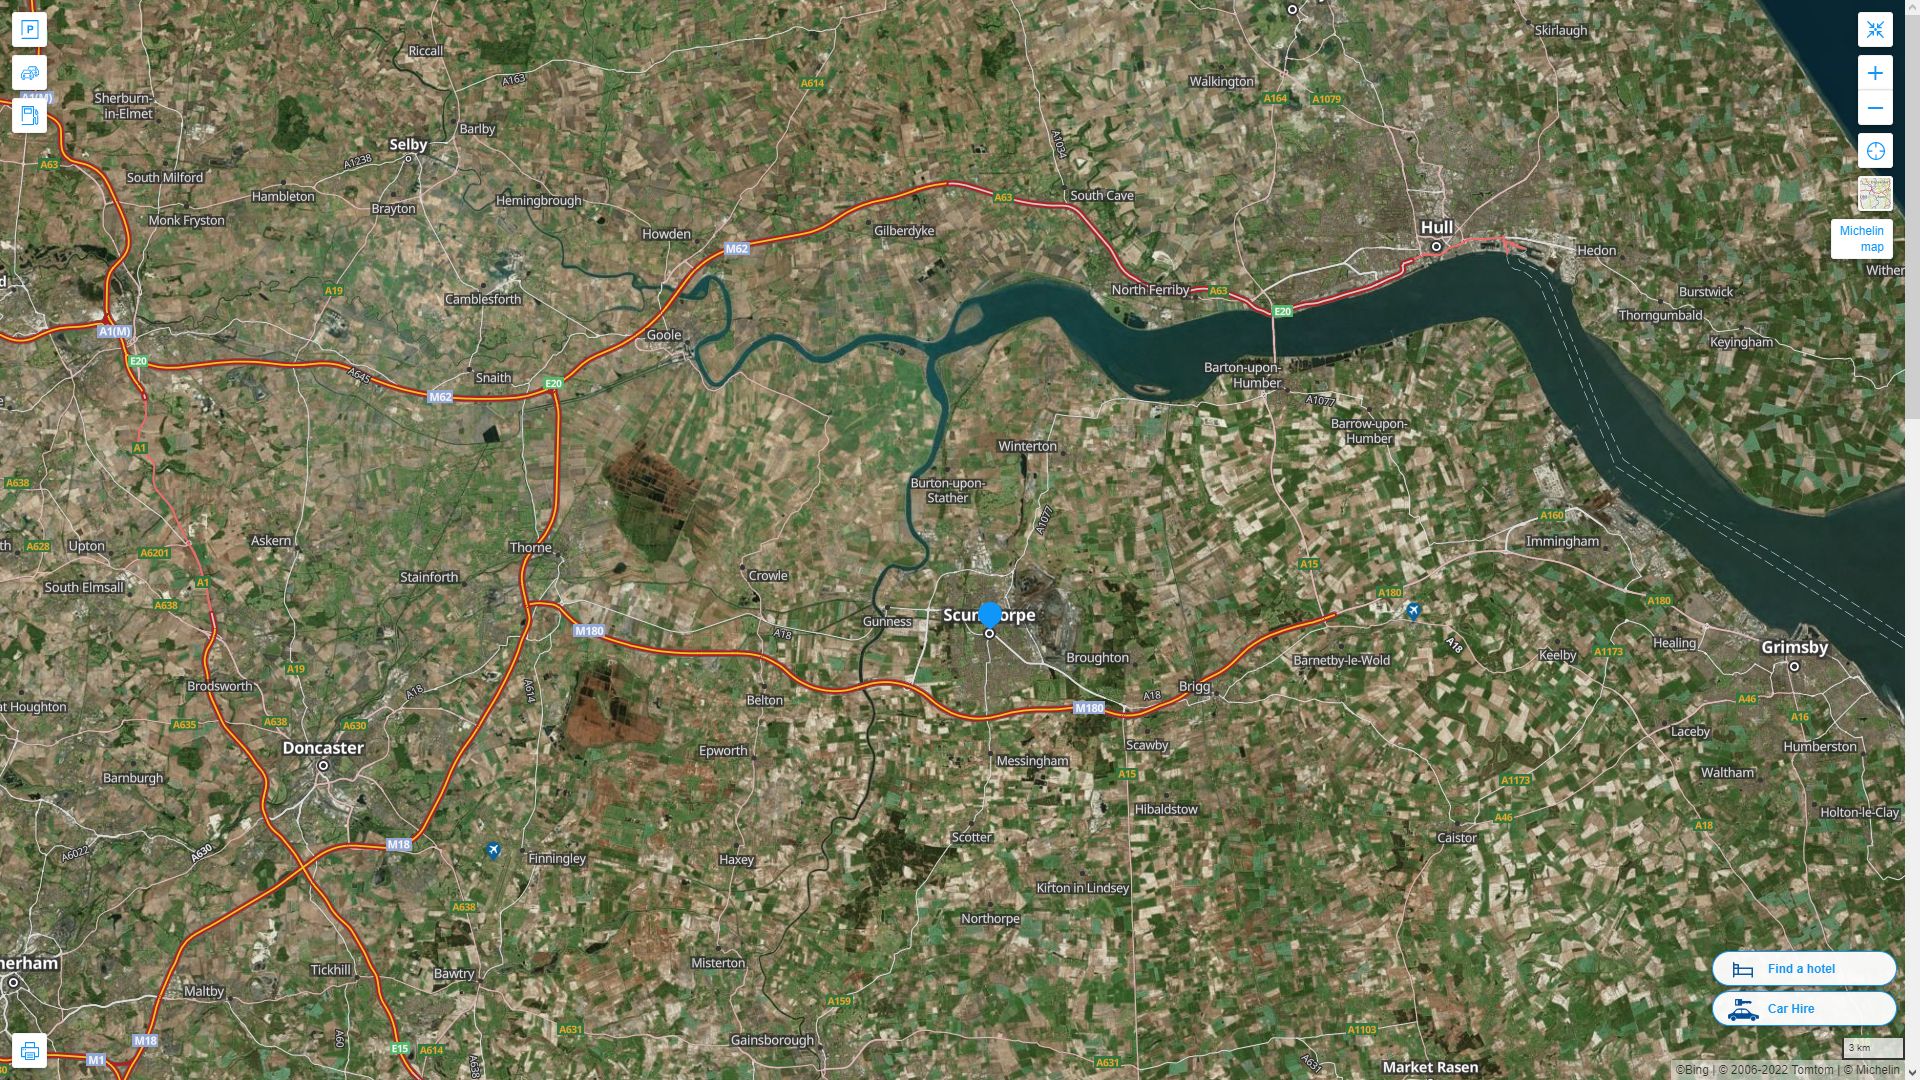 Scunthorpe Royaume Uni Autoroute et carte routiere avec vue satellite